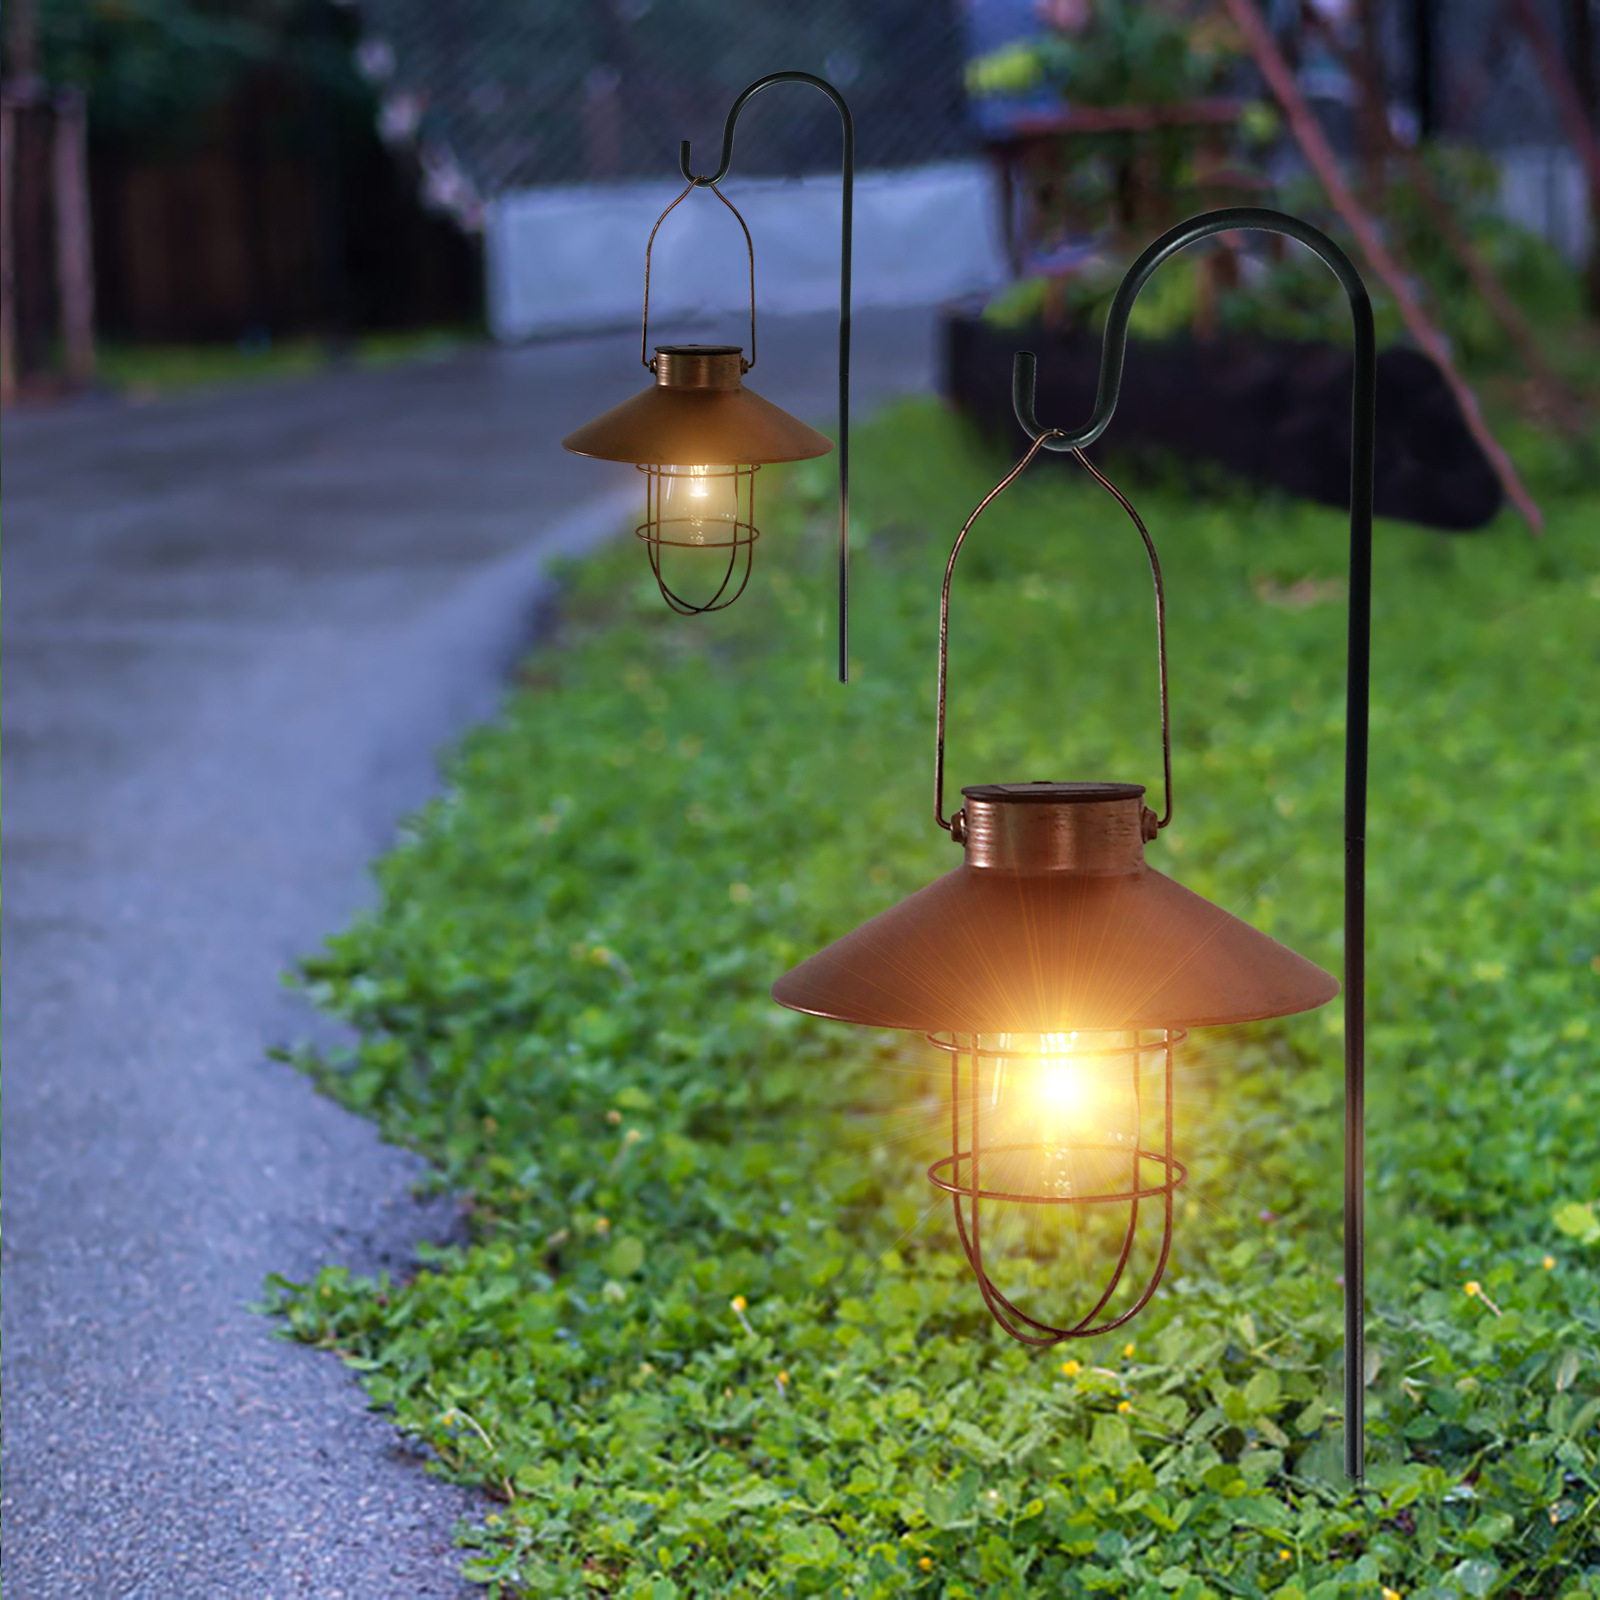 Lanterna solar retrô para decoração de jardim, luz à prova d'água, lâmpada solar vintage com lâmpada de tungstênio, ornamento para pátio e quintal